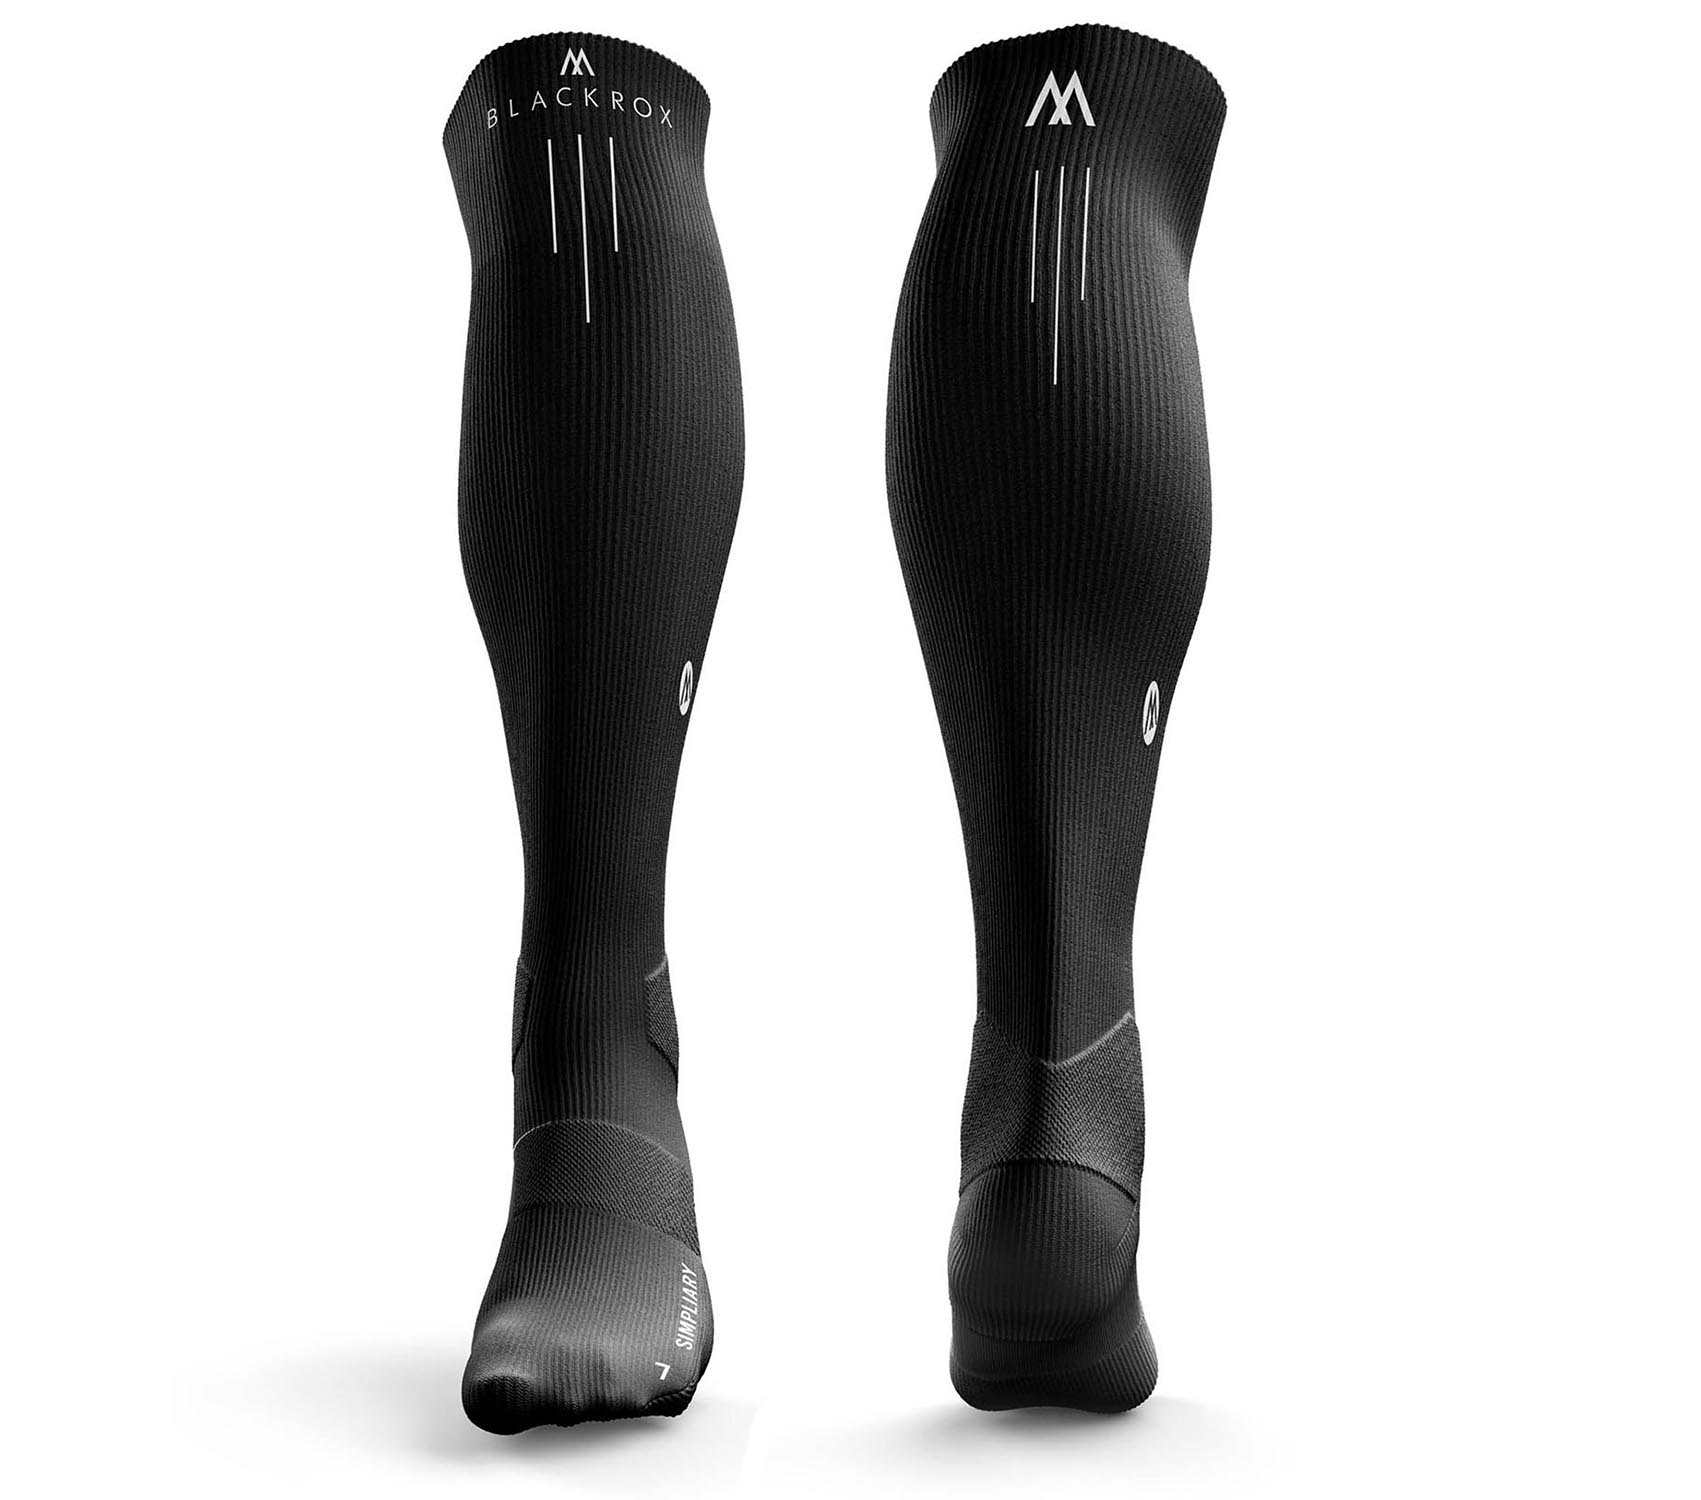 Compression socks sports BLACKROX “SIMPLIARY” compression socks